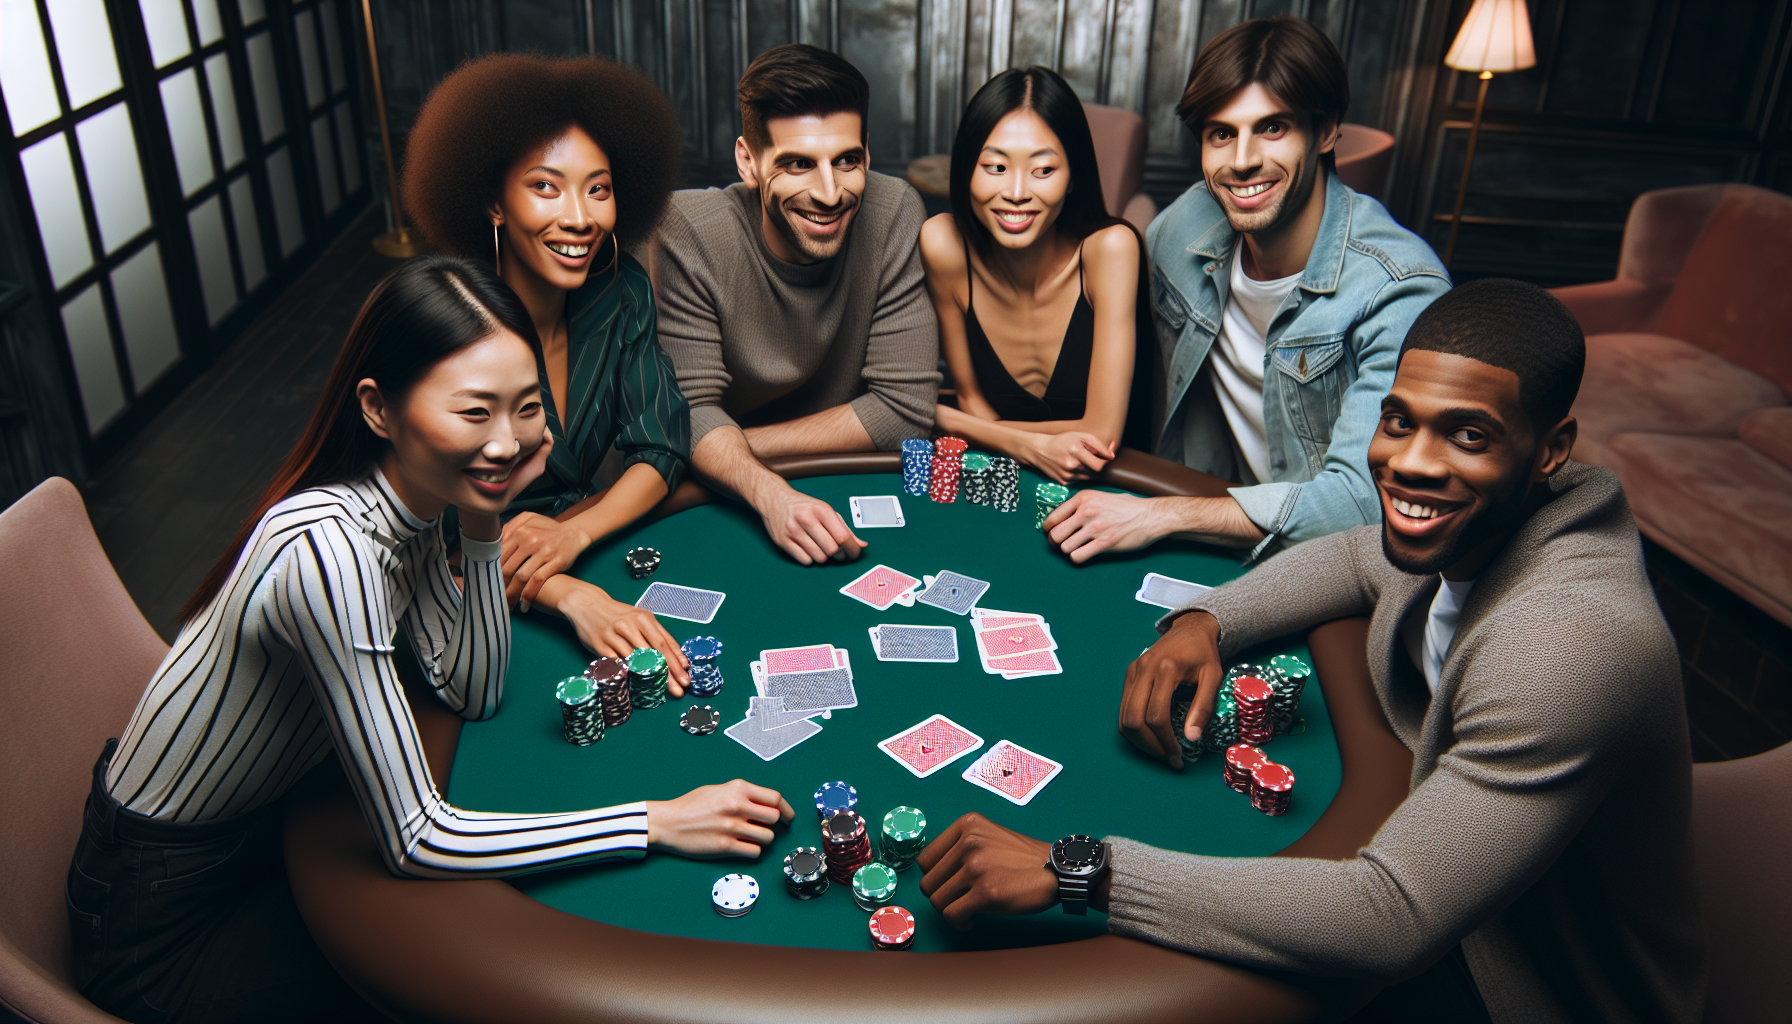 découvrez les règles du poker en société et apprenez à jouer à ce jeu de cartes passionnant dans cet article instructif.